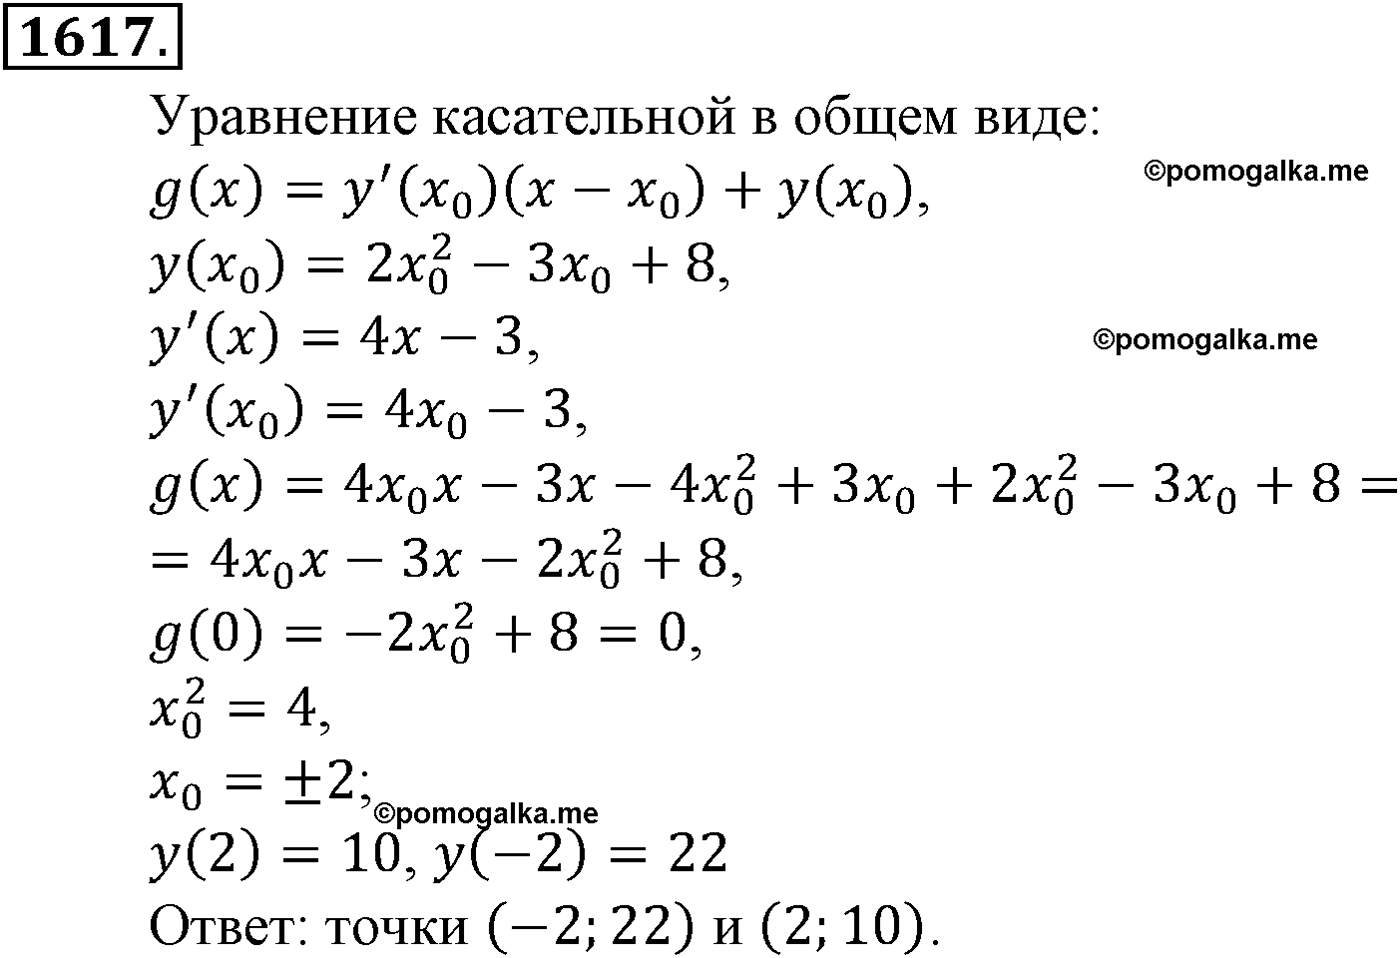 разбор задачи №1617 по алгебре за 10-11 класс из учебника Алимова, Колягина